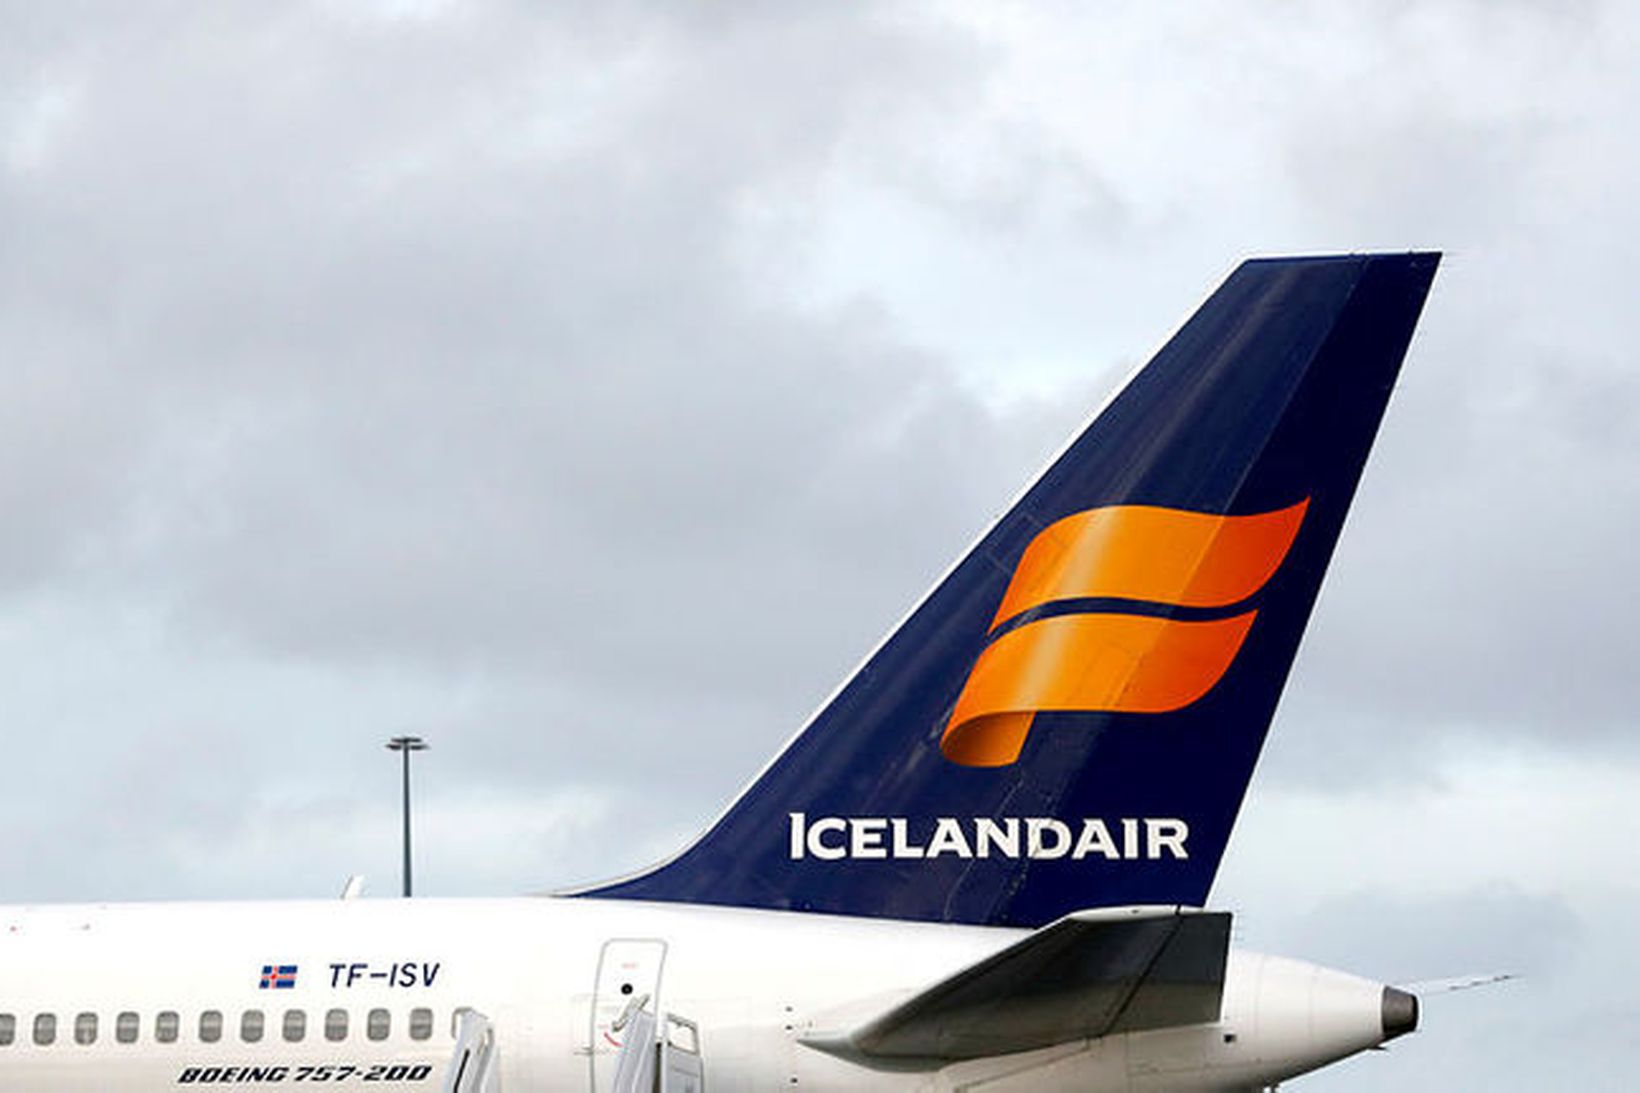 Næsta flug Icelandair frá Keflavíkurflugvelli er áætlað í fyrramálið.